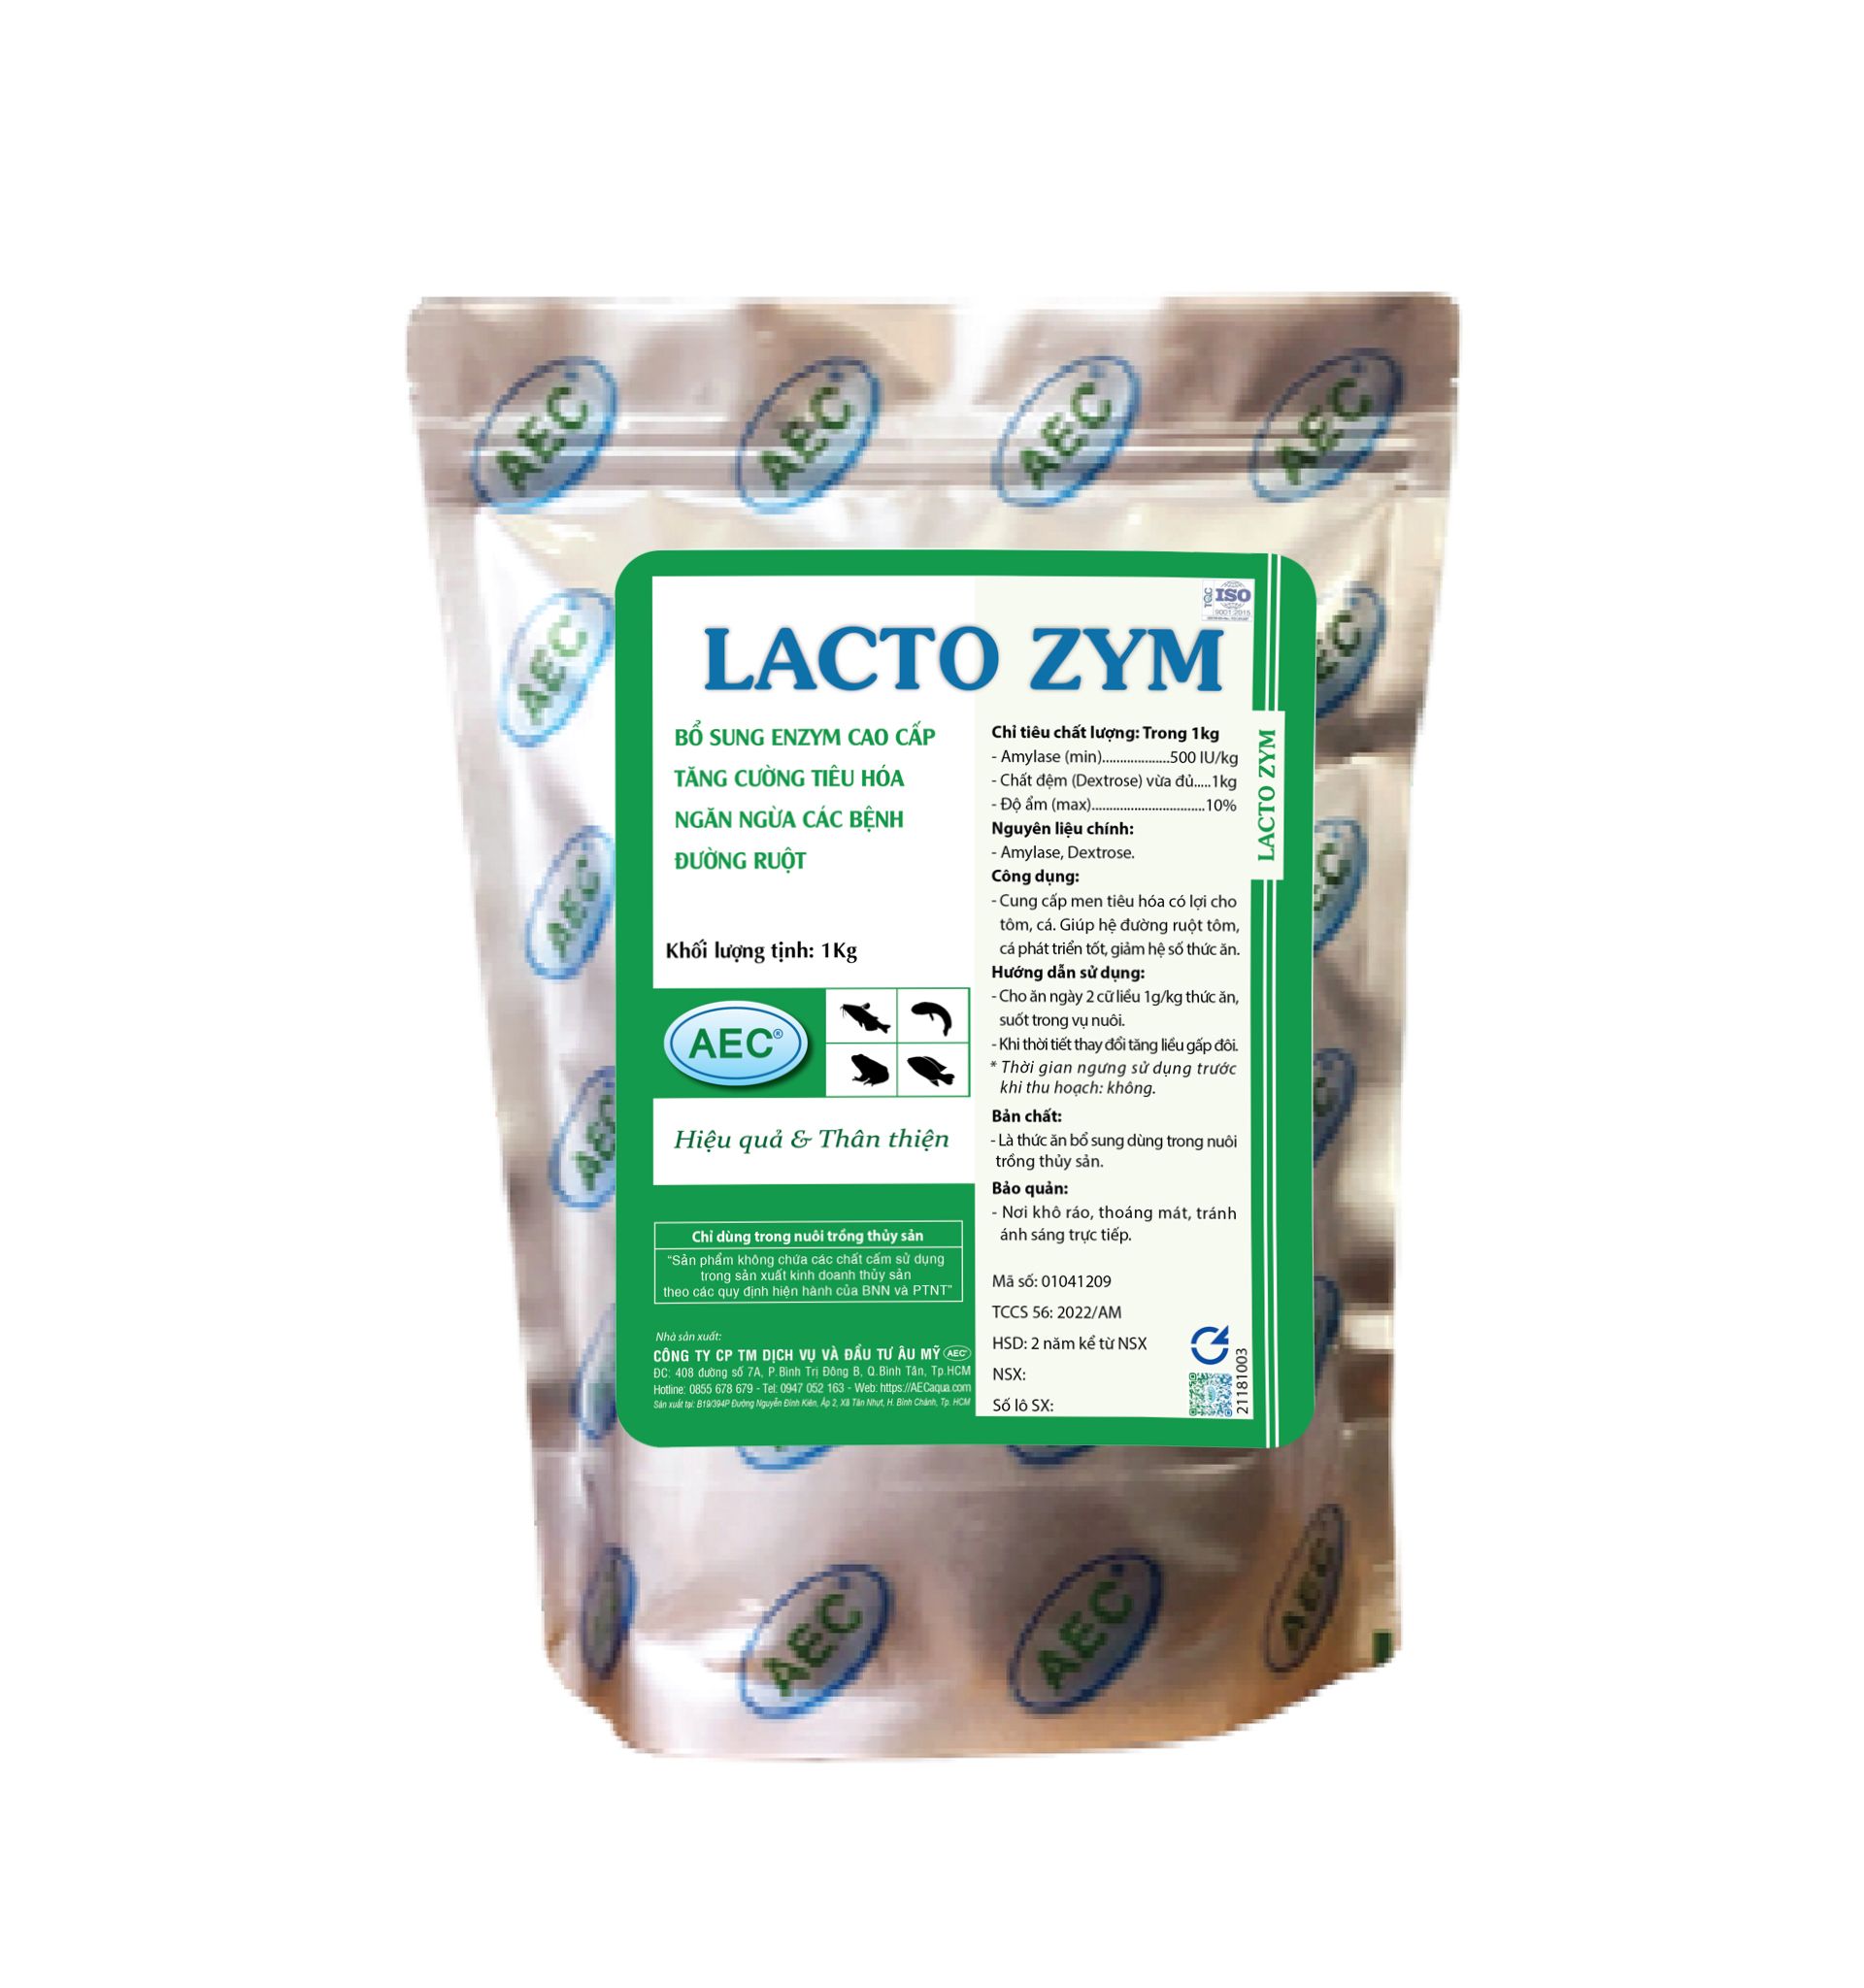  Lacto Zym | Bổ sung enzym cao cấp tăng cường tiêu hóa ngăn ngừa các bệnh đường ruột 